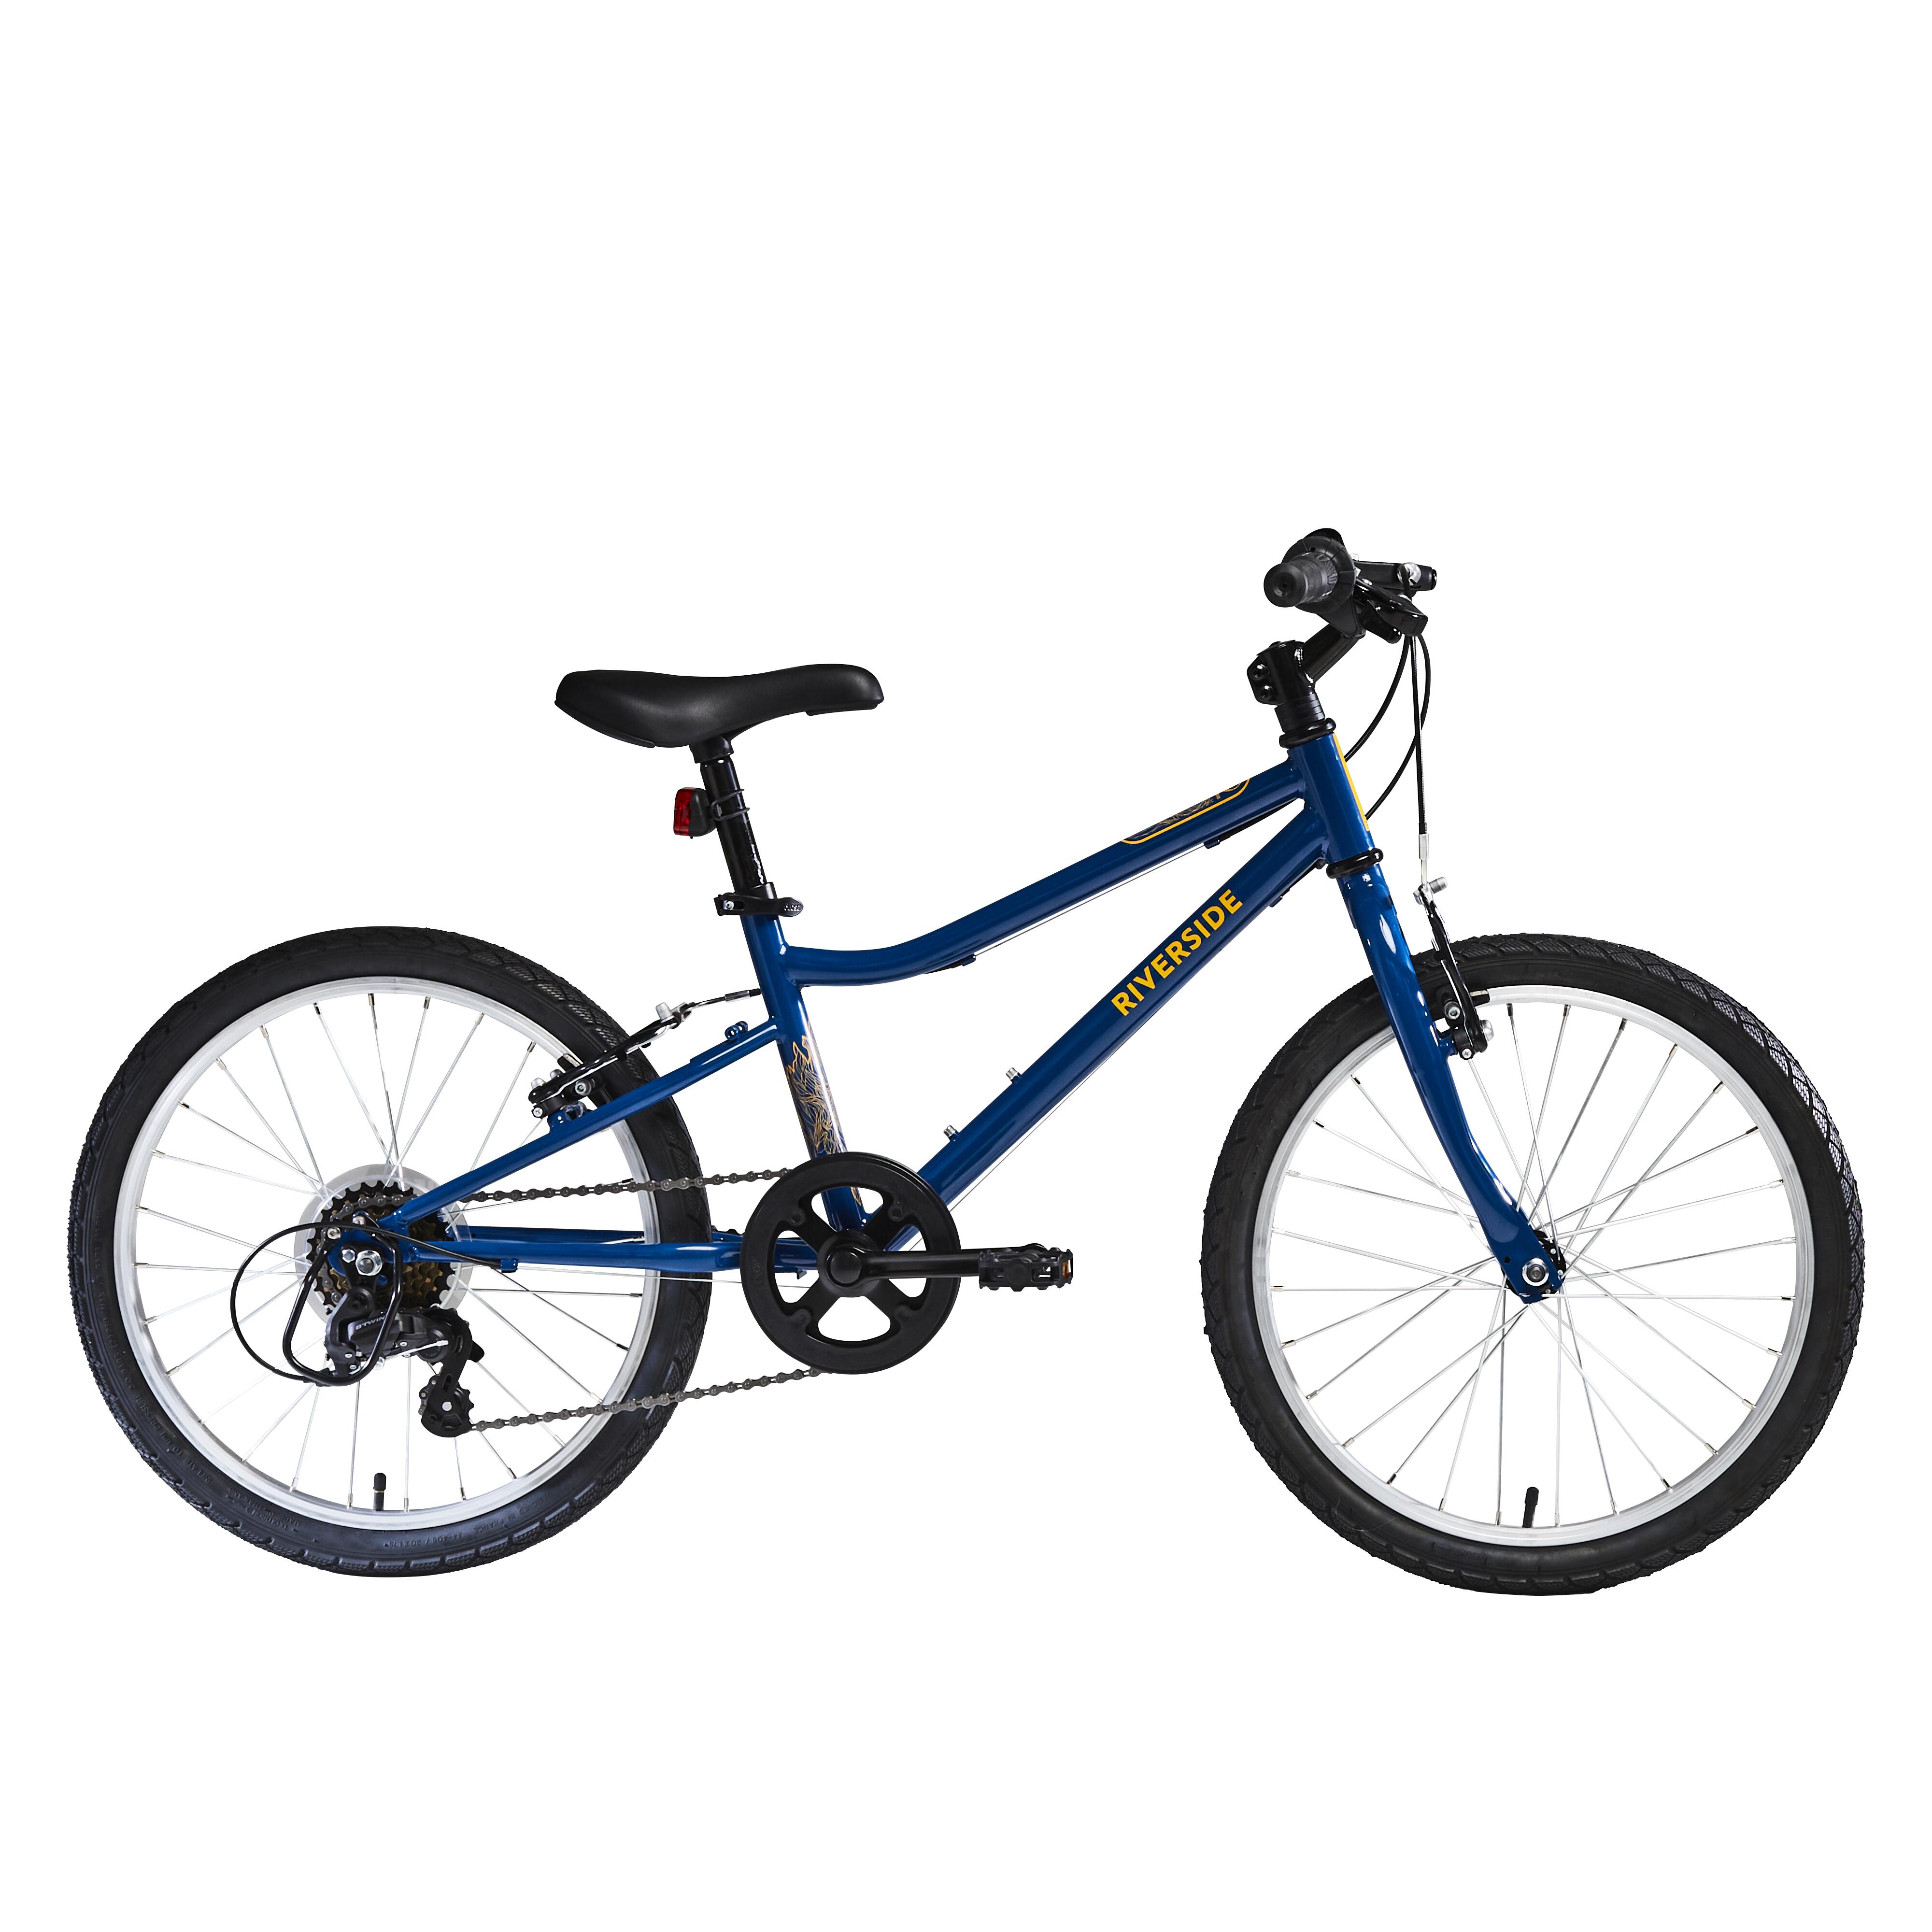 Bicicletă polivalentă Riverside 120 20” Copii 6-9 ani La Oferta Online BTWIN imagine La Oferta Online